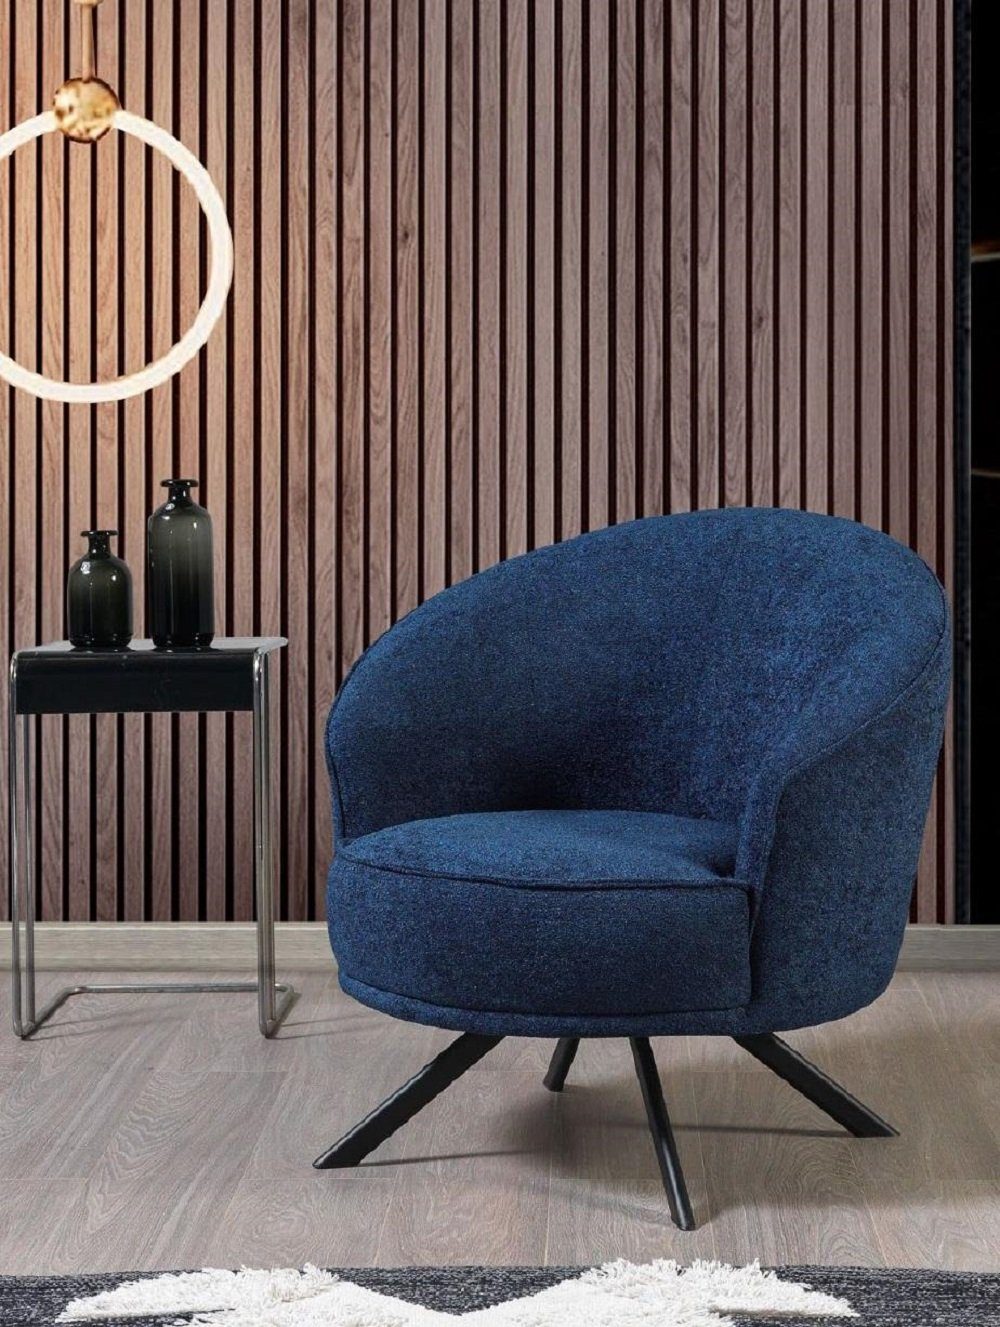 JVmoebel Sessel Sessel Luxus Polster Textil Couch Einsitzer Textil Möbel Sofa Couchen